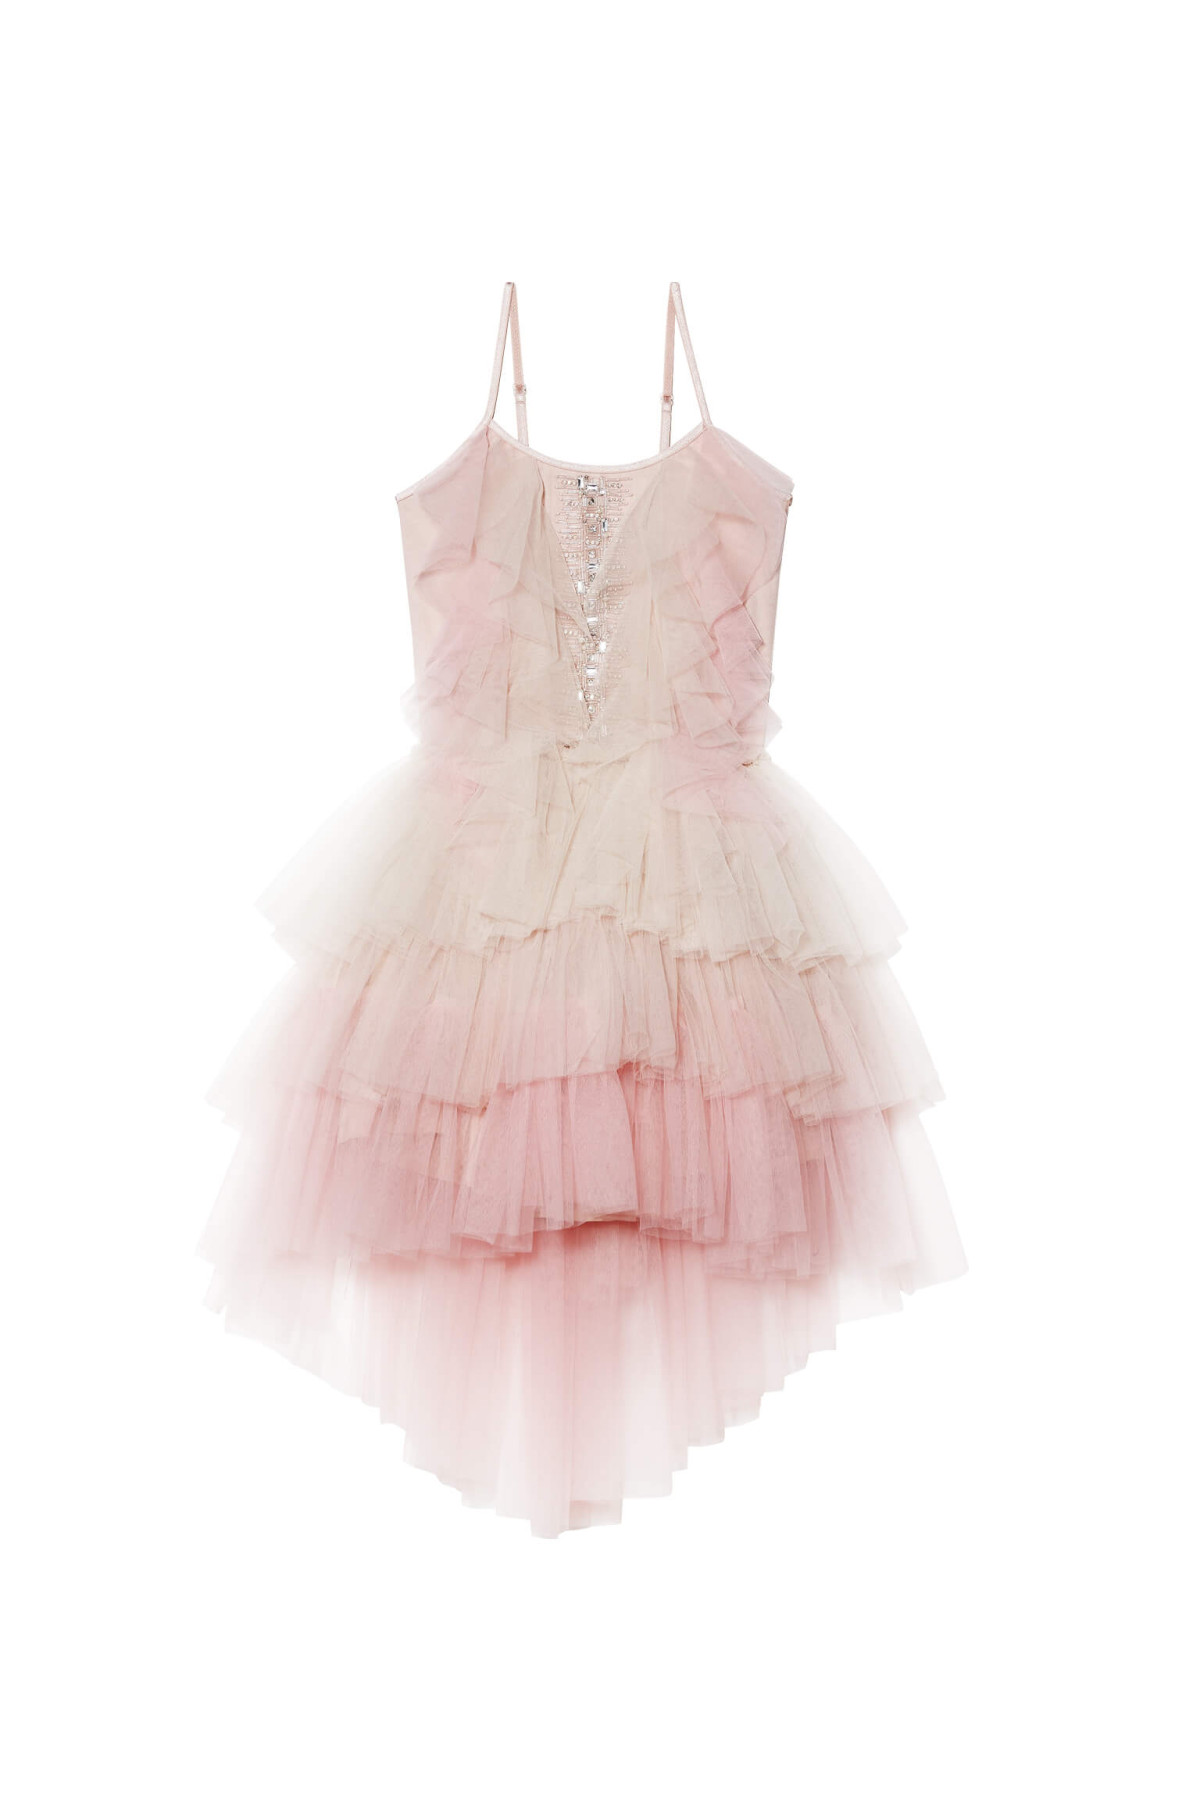 Rent Tutu du Monde All I Want Tutu Dress in Pink Sugar